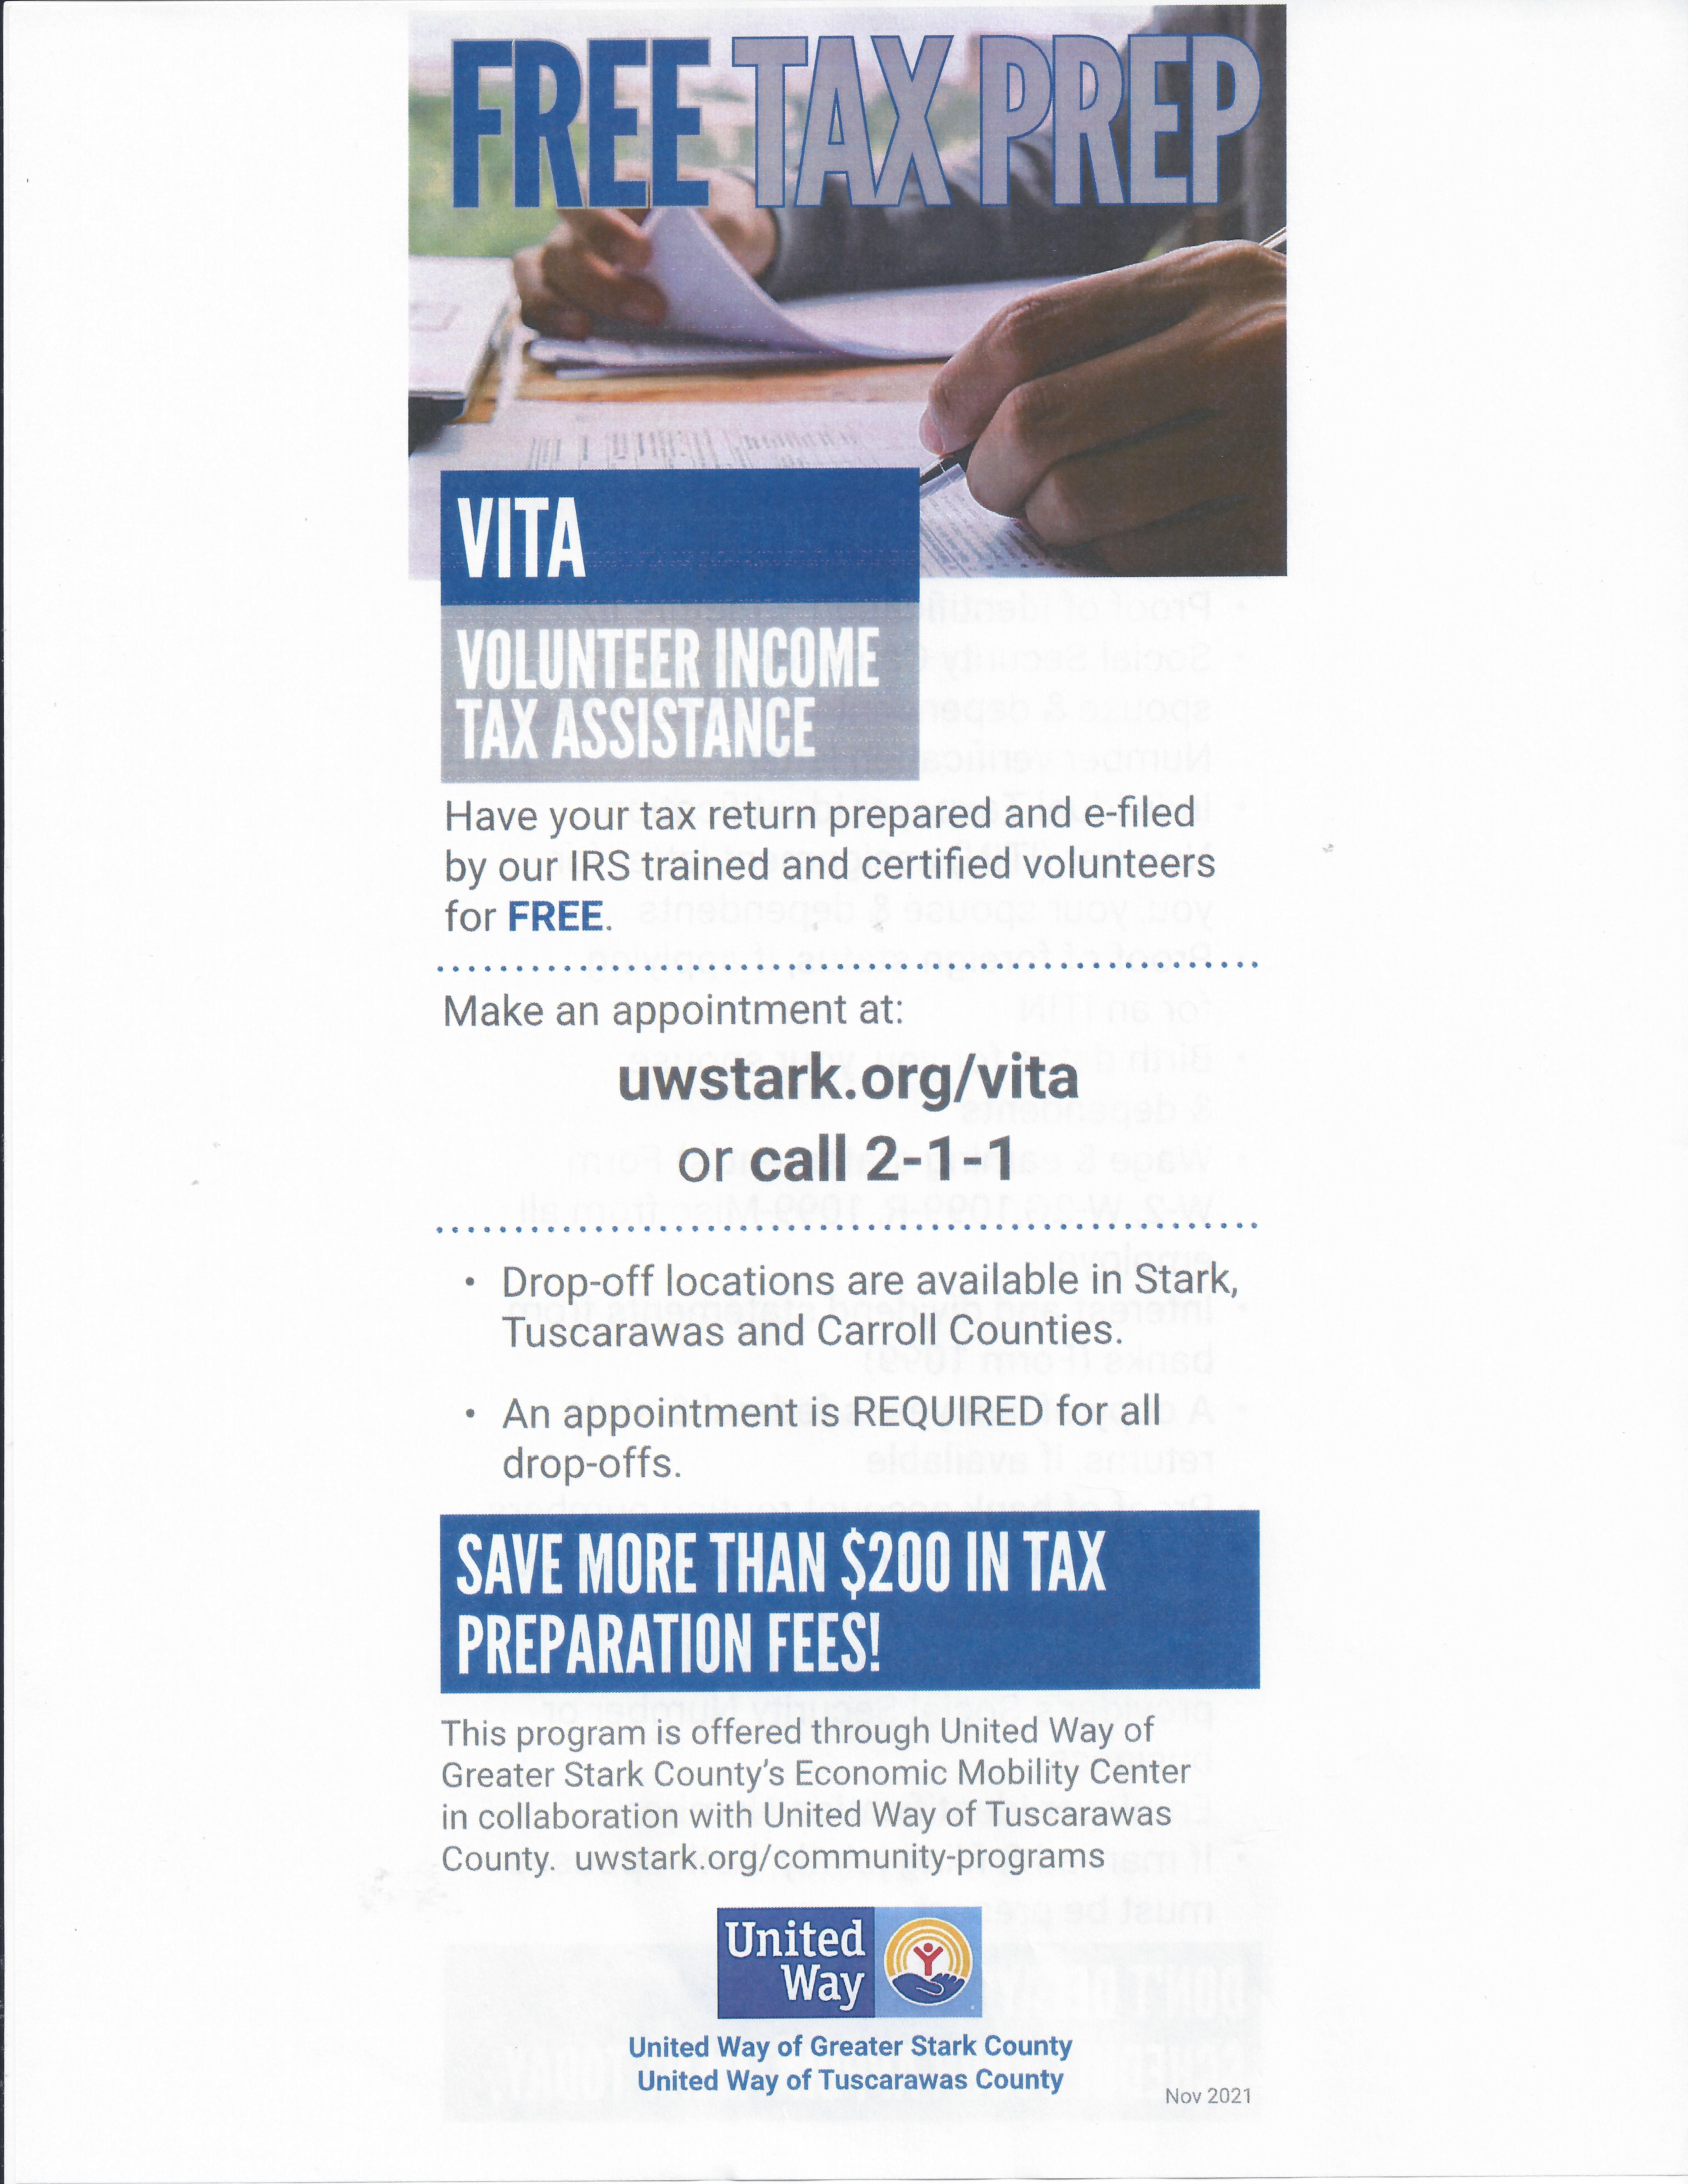 VITA Tax prep